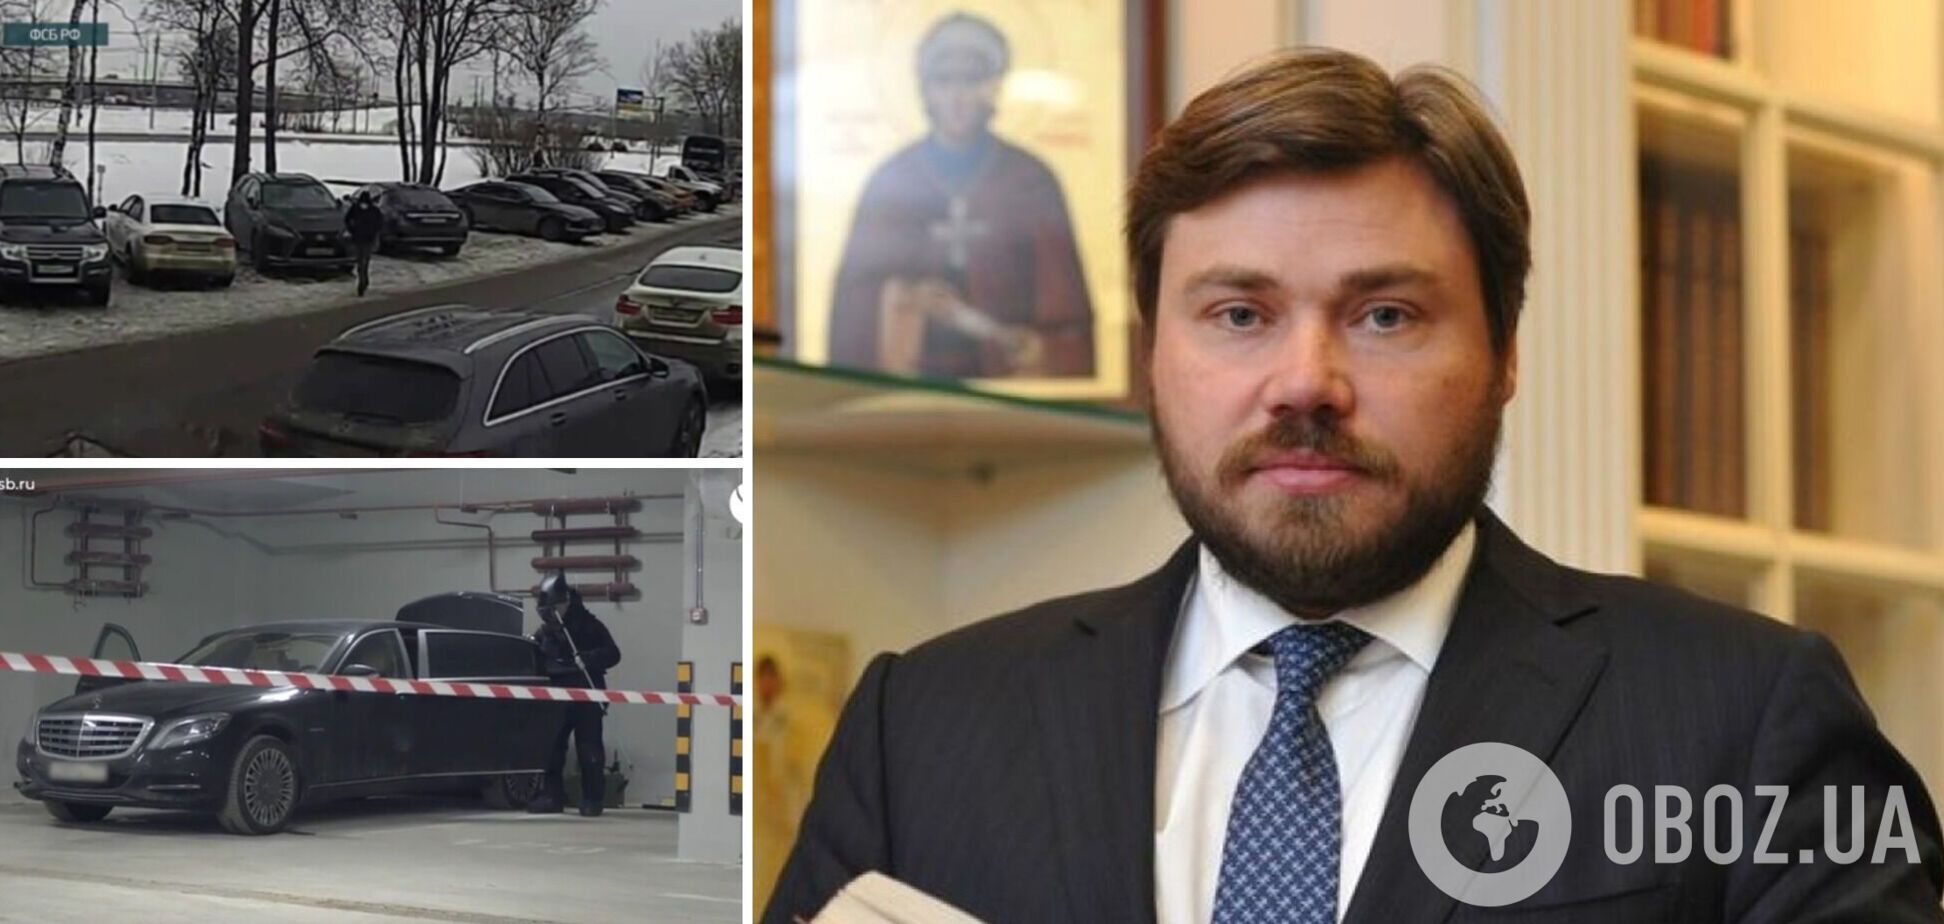 Заминировали одно авто, разминировали другое: ФСБ опозорилось видео 'покушения' на олигарха Малофеева